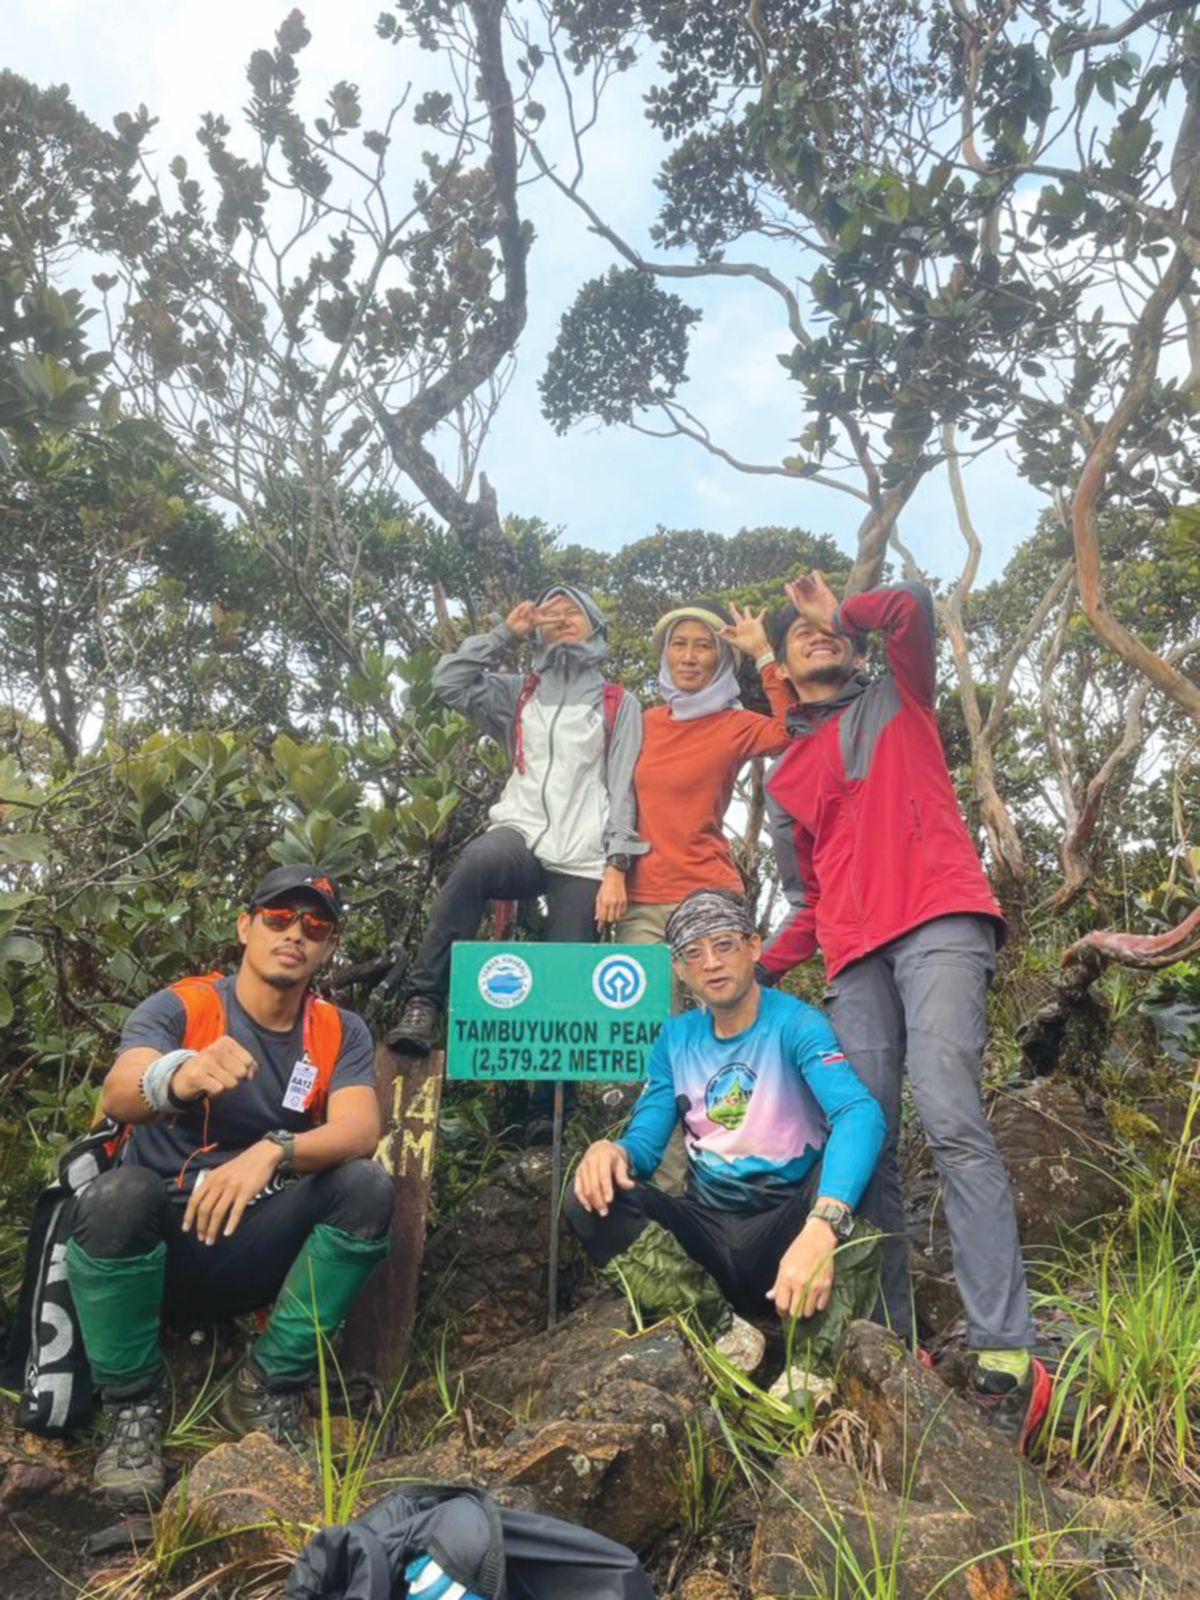 MERAIKAN kejayaan menawan puncak Gunung Tambuyukon bersama rakan pendaki.